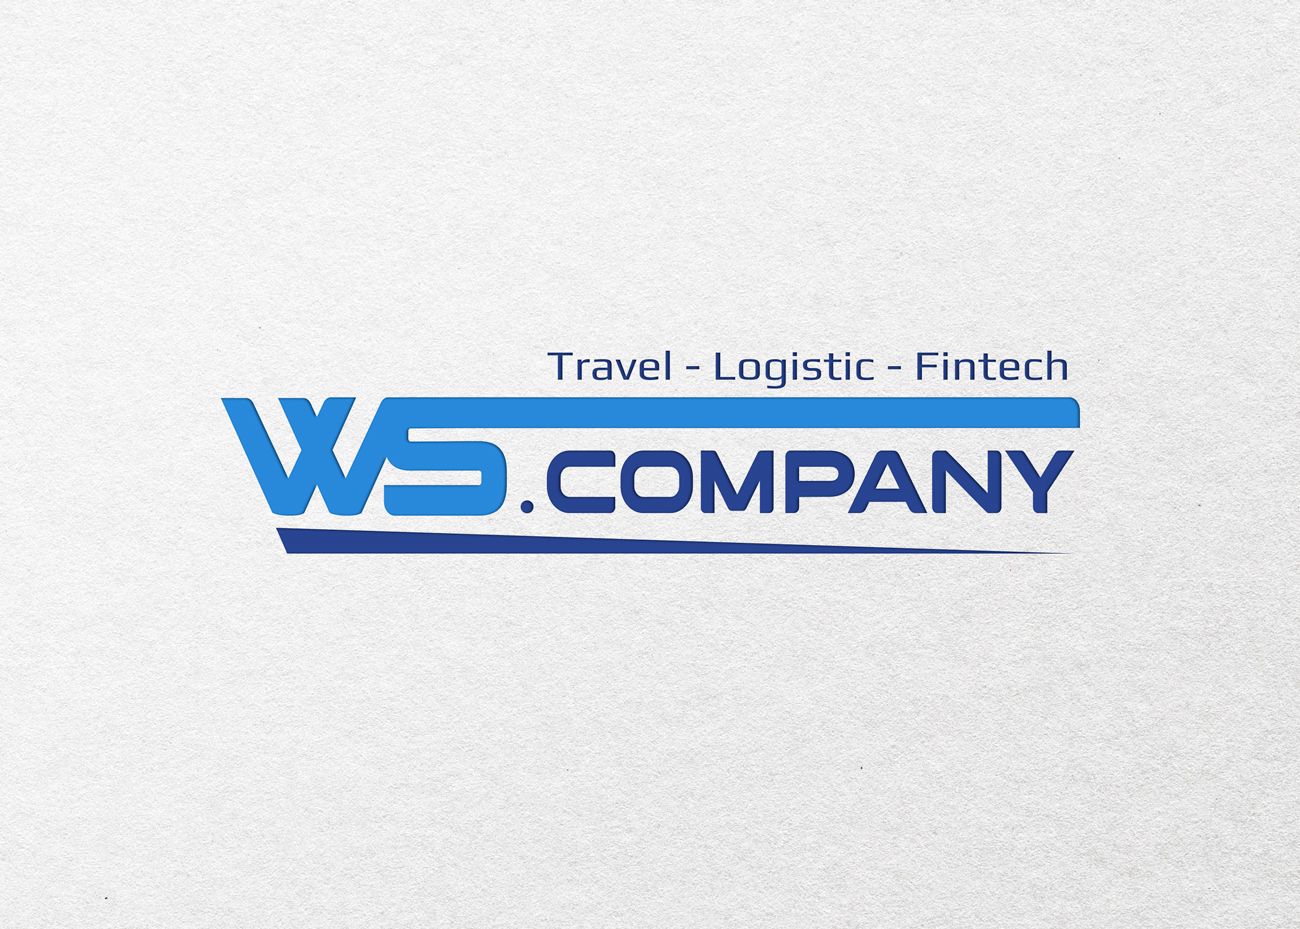 Логотип для WS.Company — Travel - Logistic - Fintech - дизайнер OlgaDiz